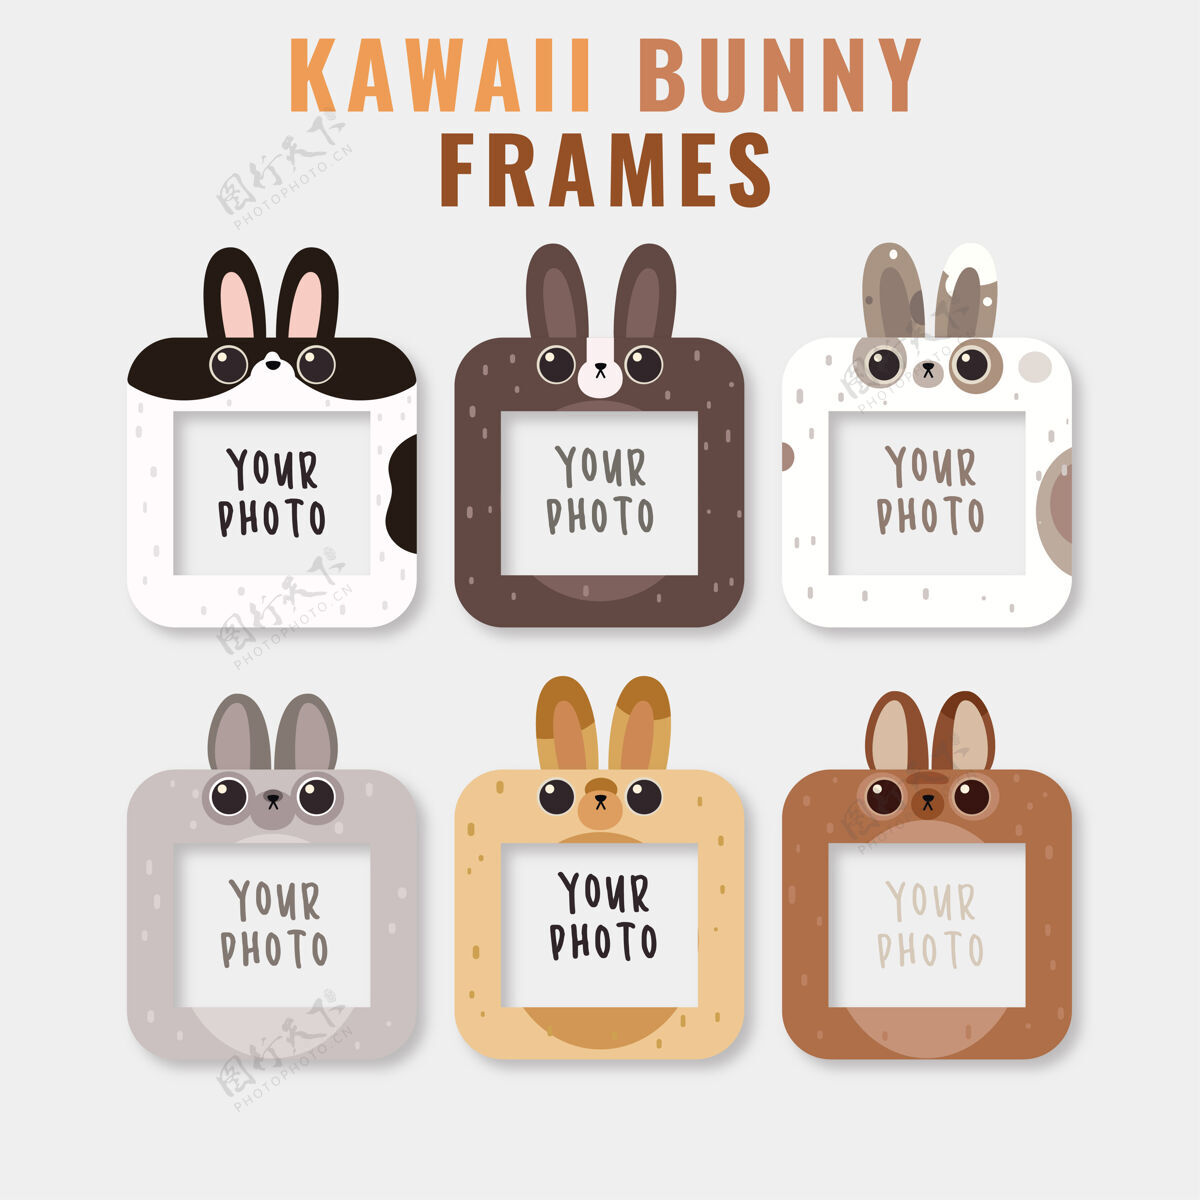 贴纸框架与可爱的兔子头模板设置可爱插图